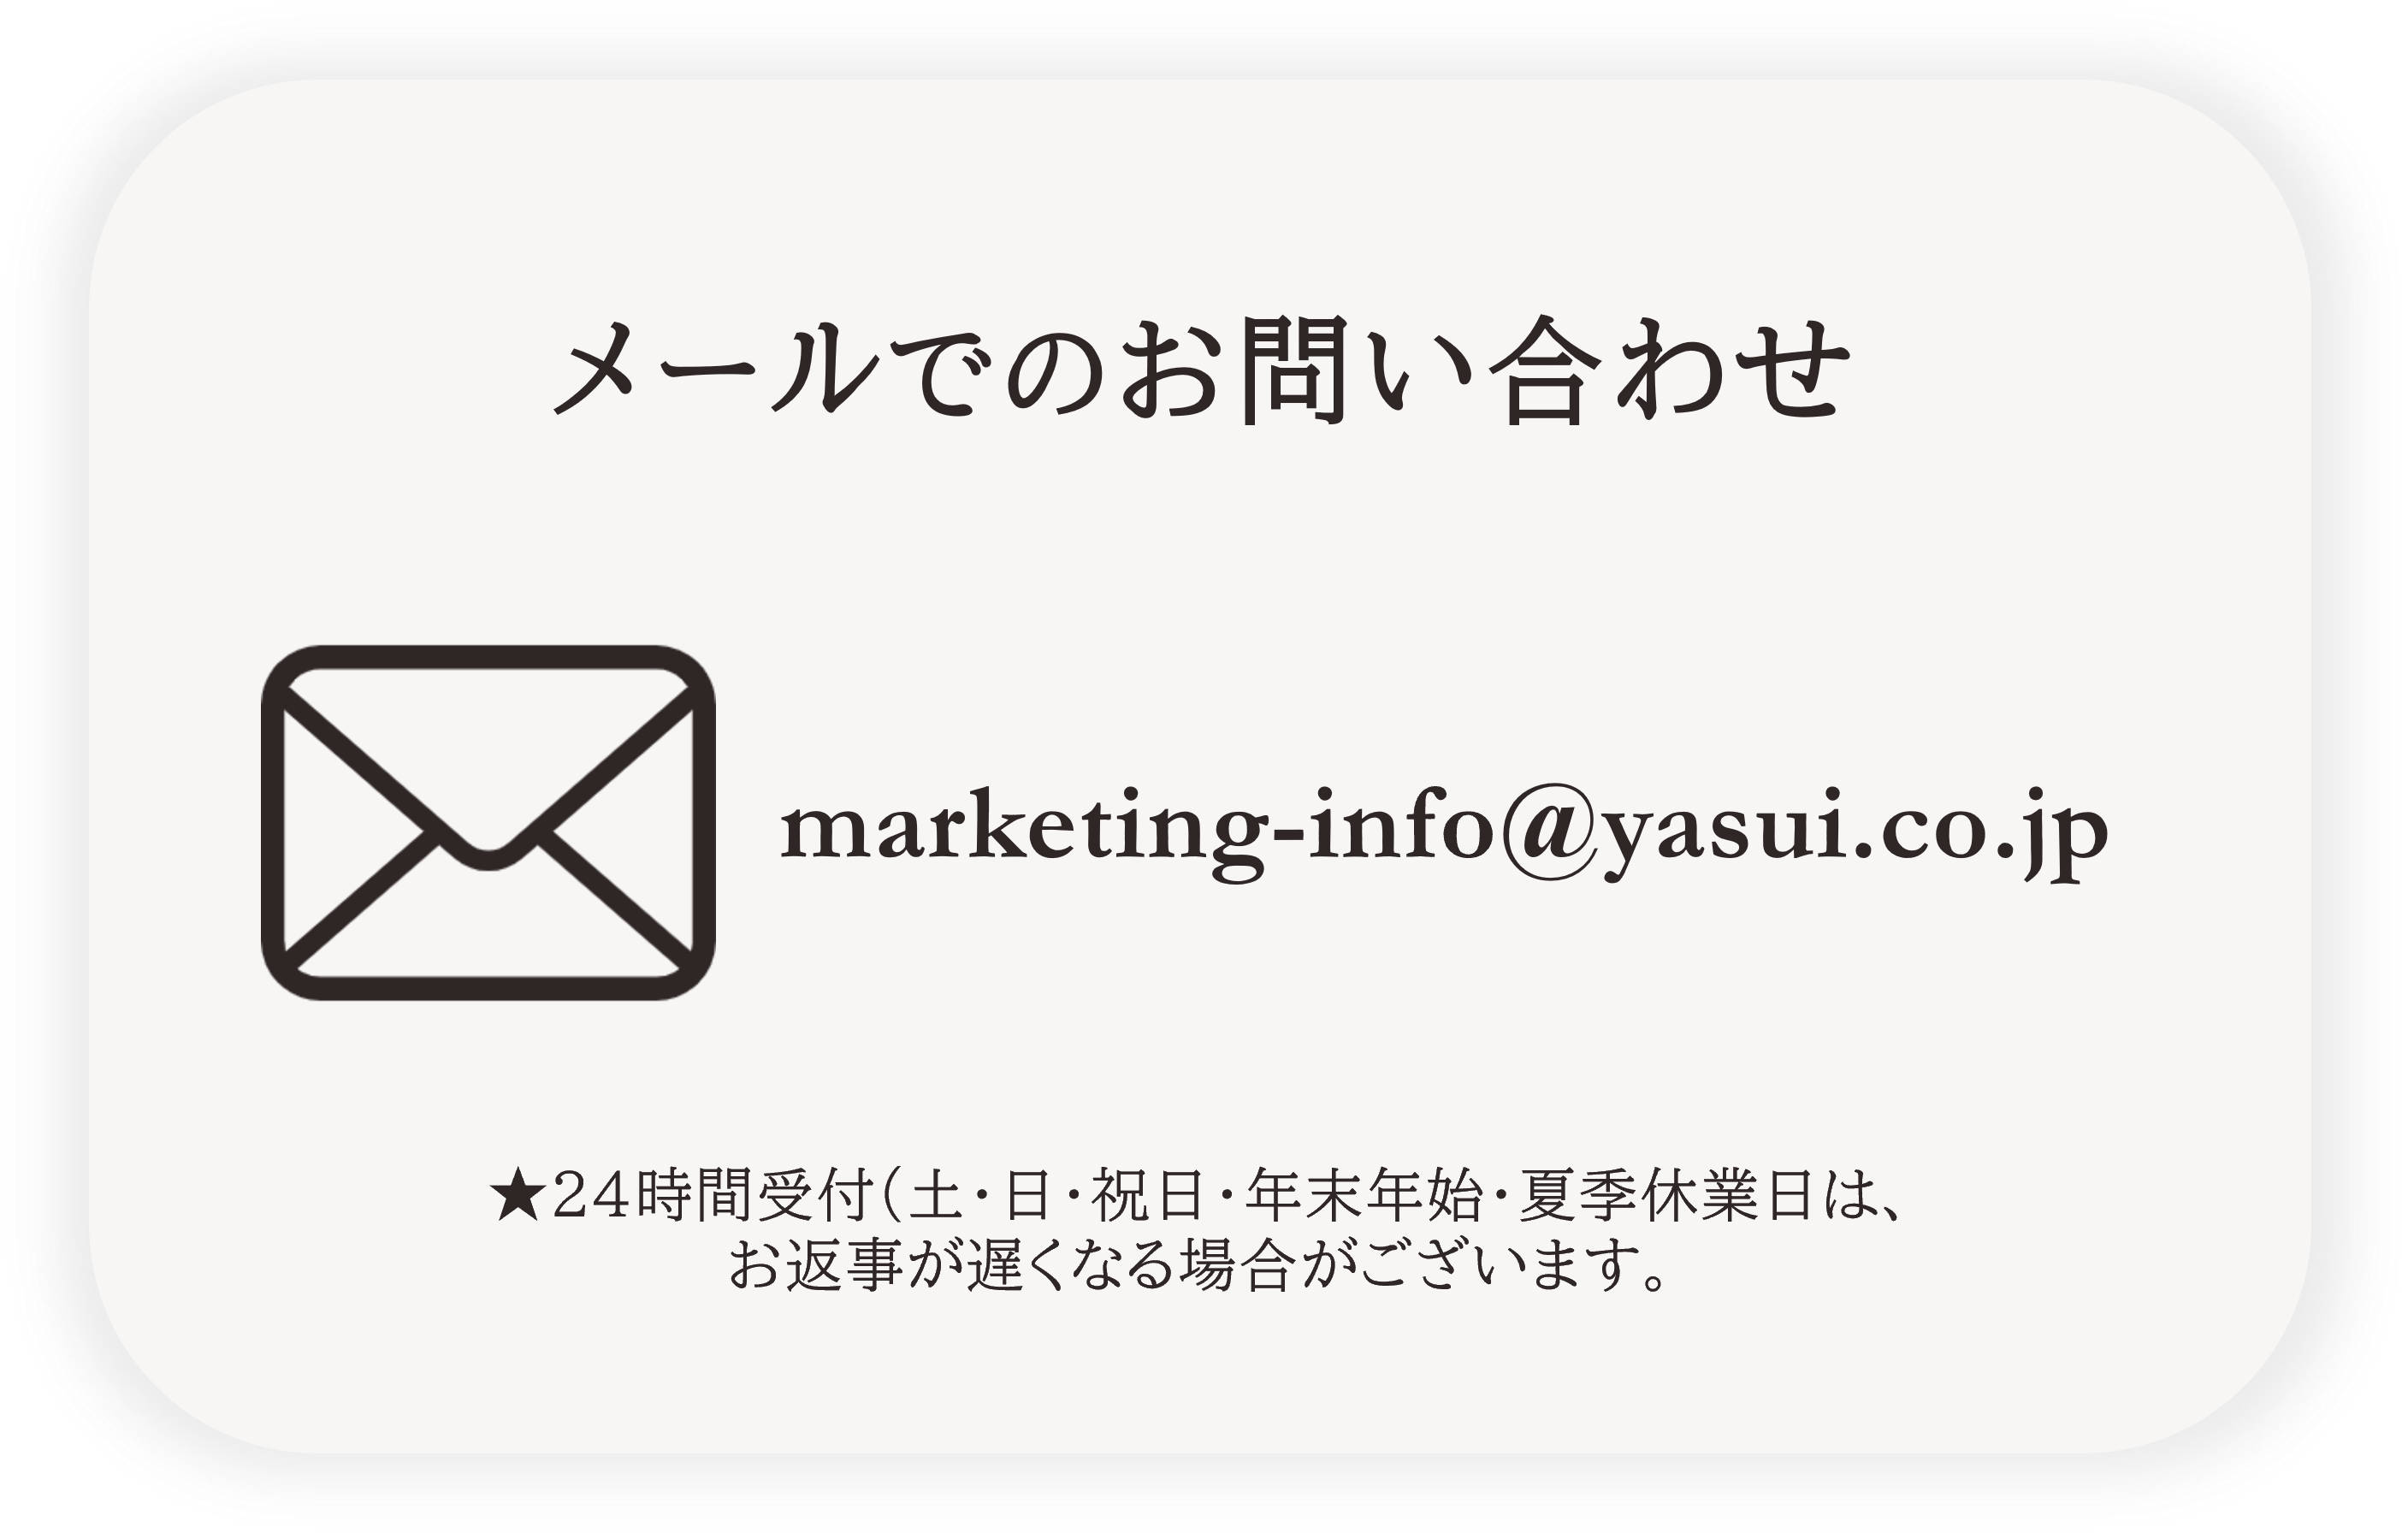 メール問合せ先→marketing-info@yasui.co.jp